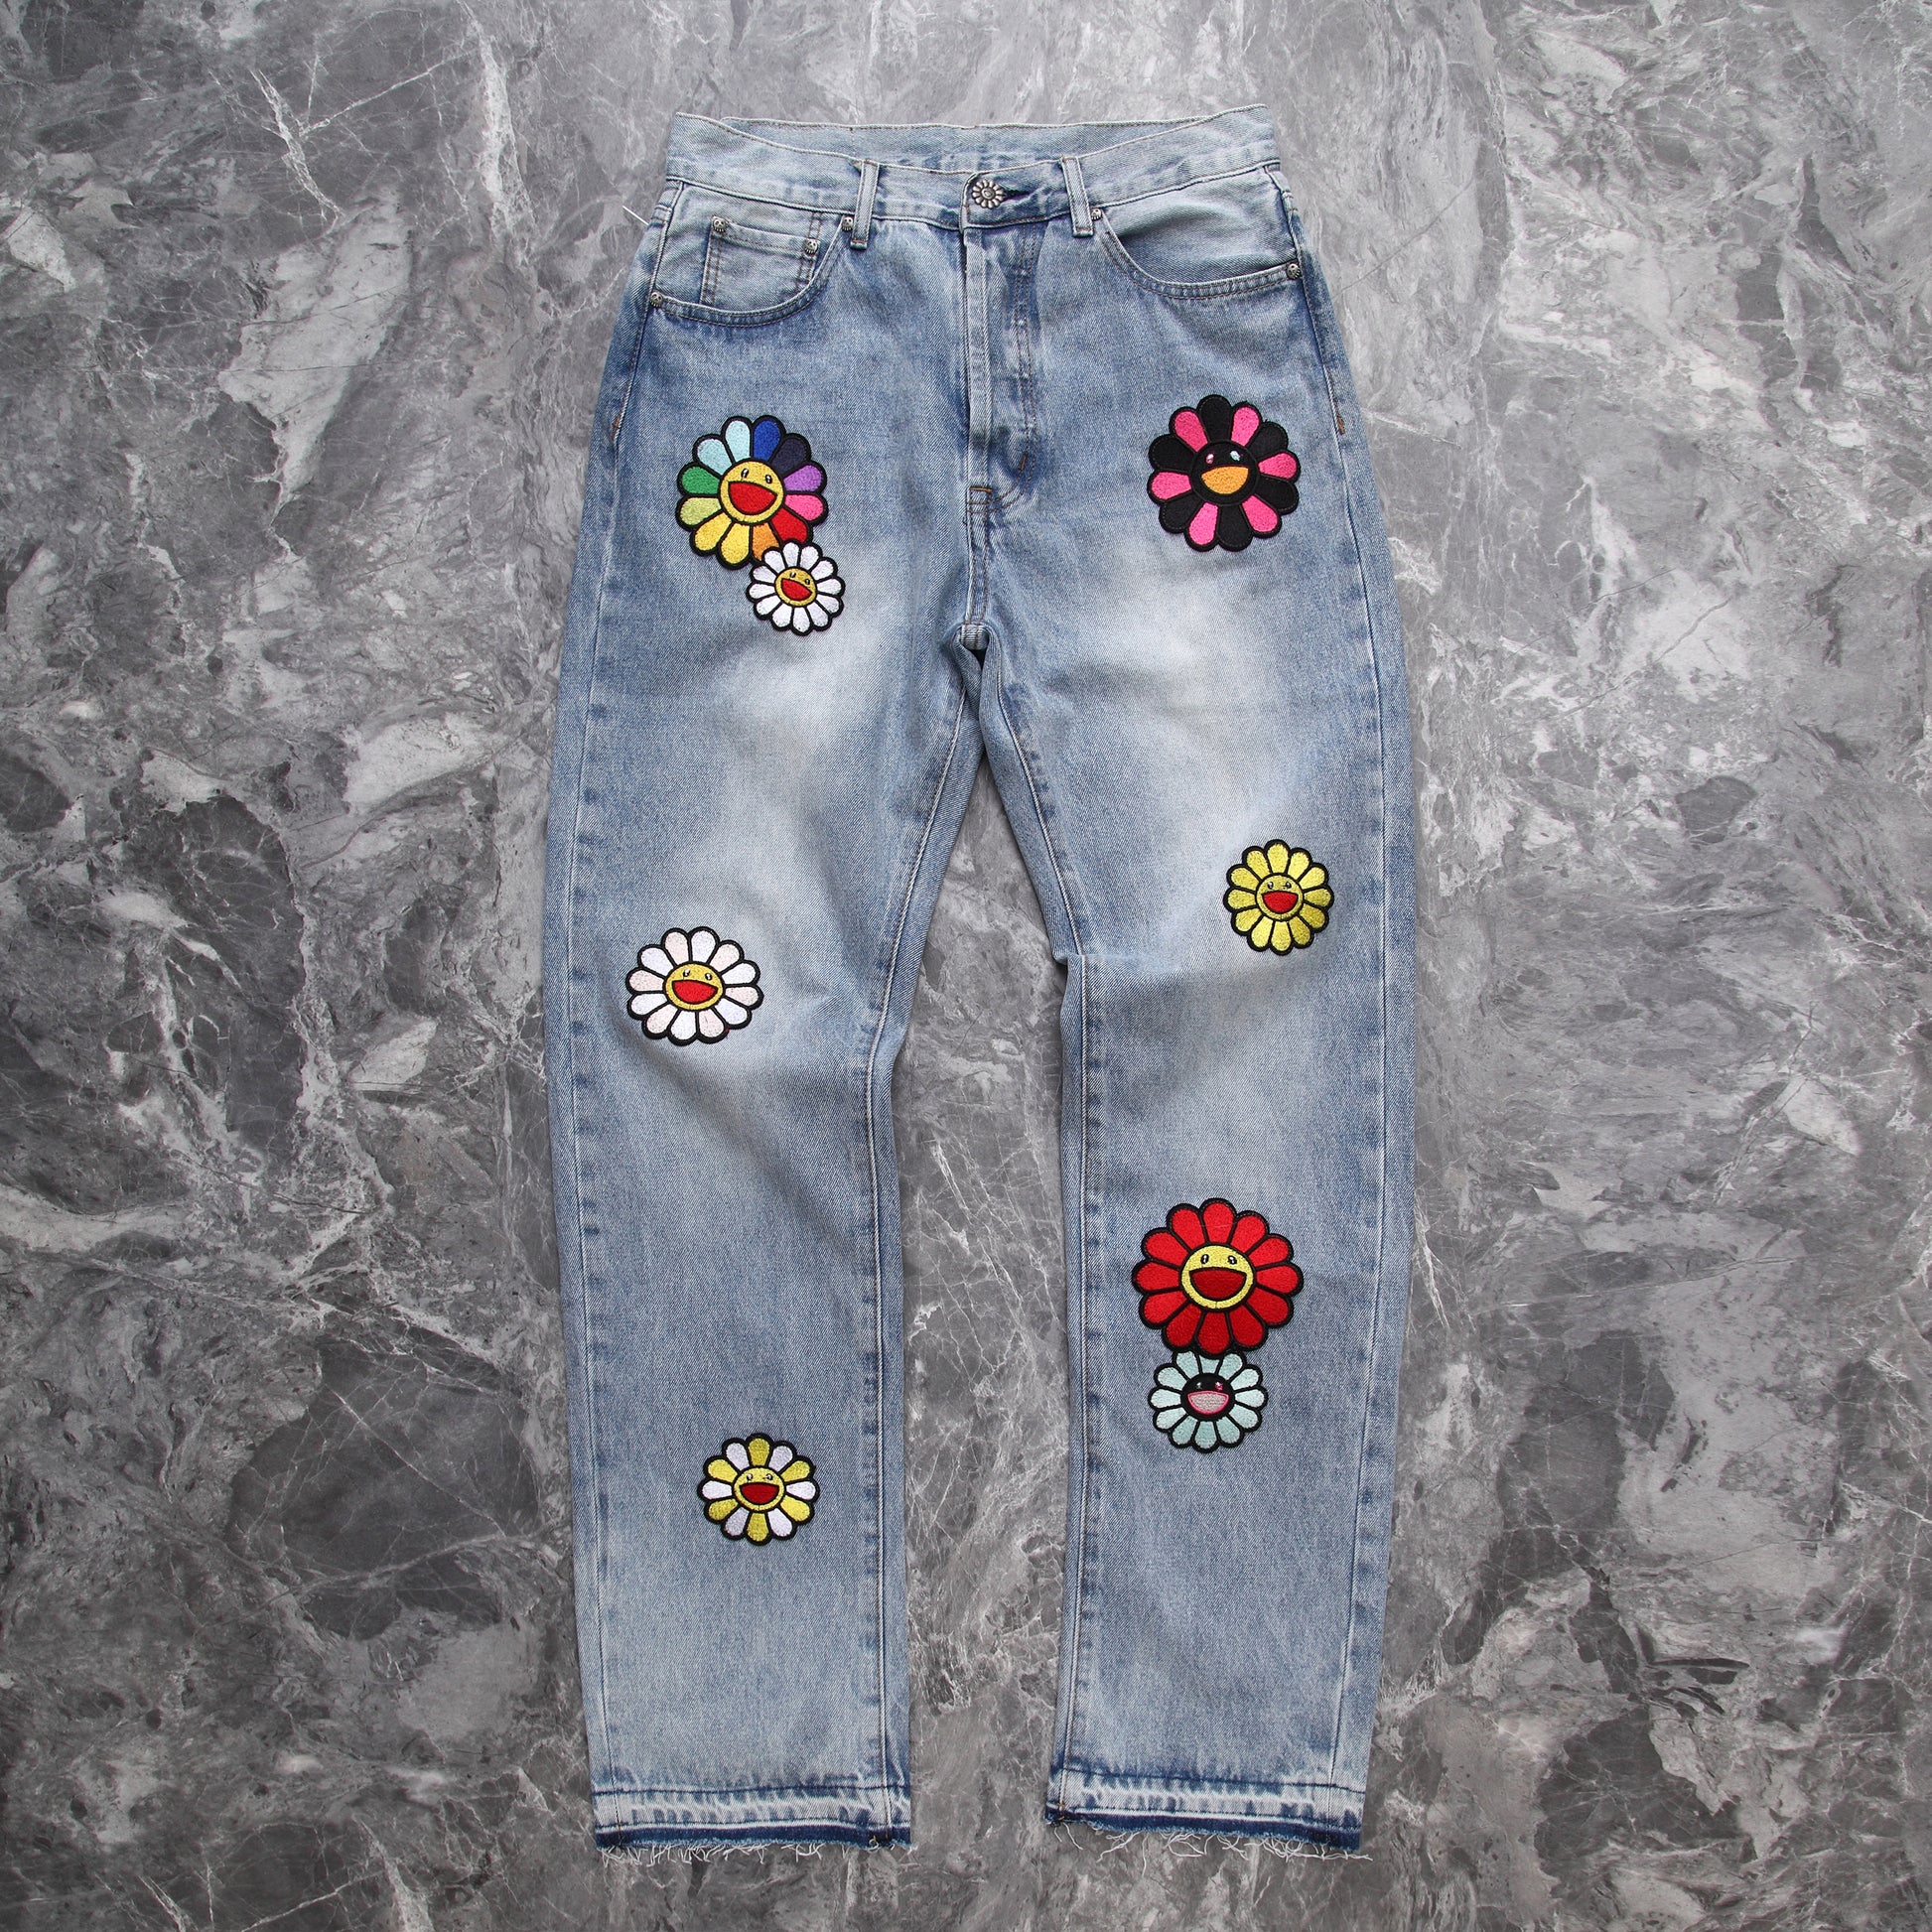 Takashi Murakami Pants/Jeans DIY Painting